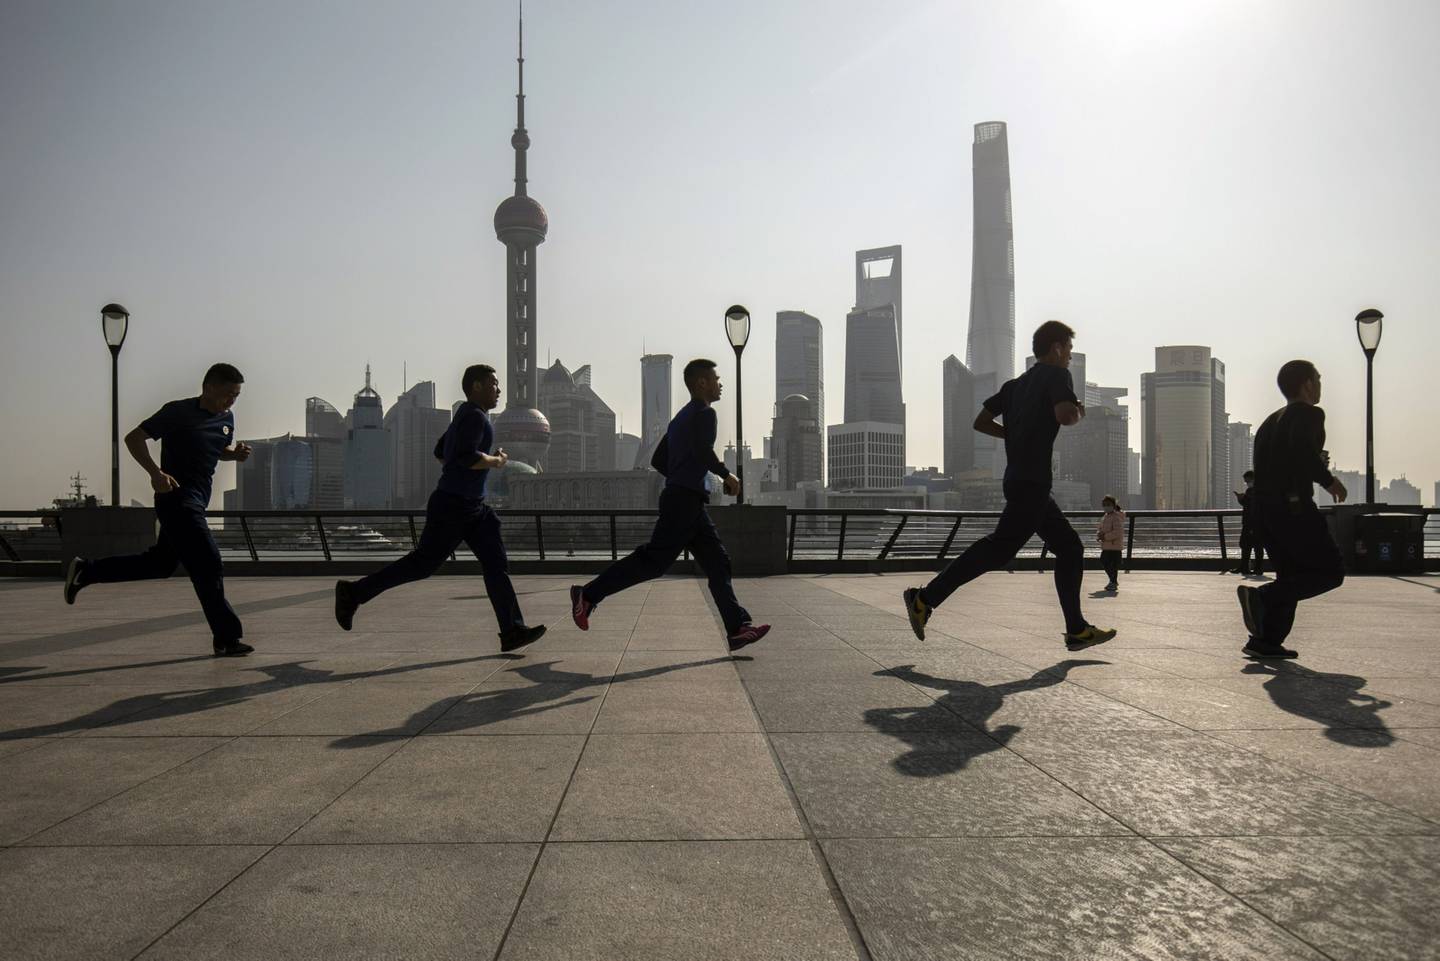 Los corredores corren a lo largo del Bund frente a los edificios del distrito financiero de Lujiazui, al otro lado del río Huangpu, en Shanghai, China, el viernes 27 de febrero de 2022. Fotógrafo: Qilai Shen/Bloomberg